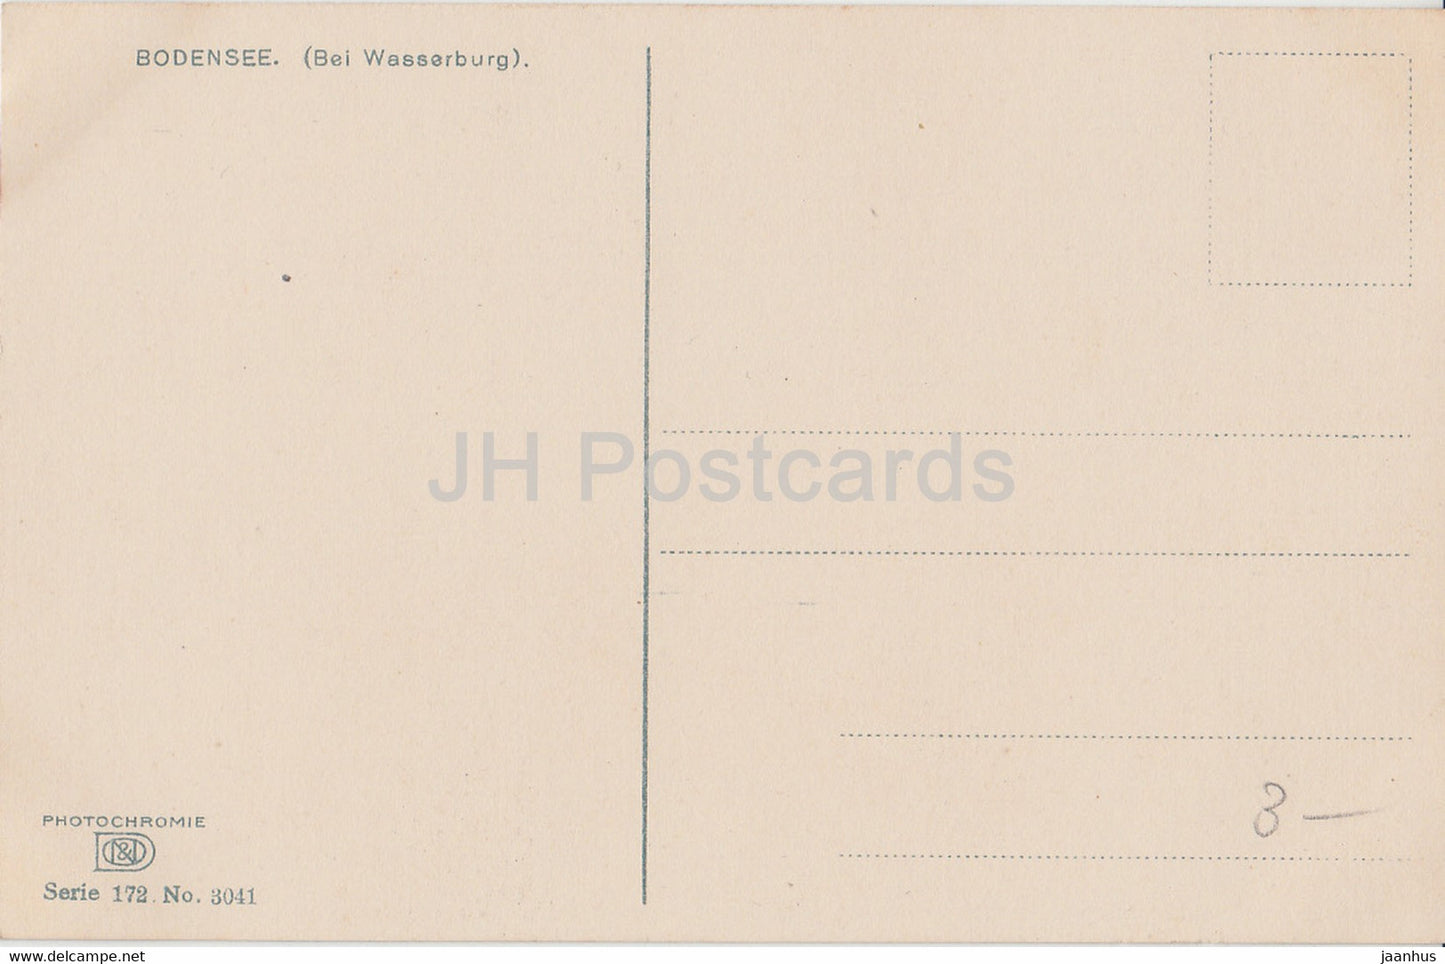 Bodensee bei Wasserburg - Boot - Photochromie 3041 - Serie 172 - alte Postkarte - Deutschland - unbenutzt